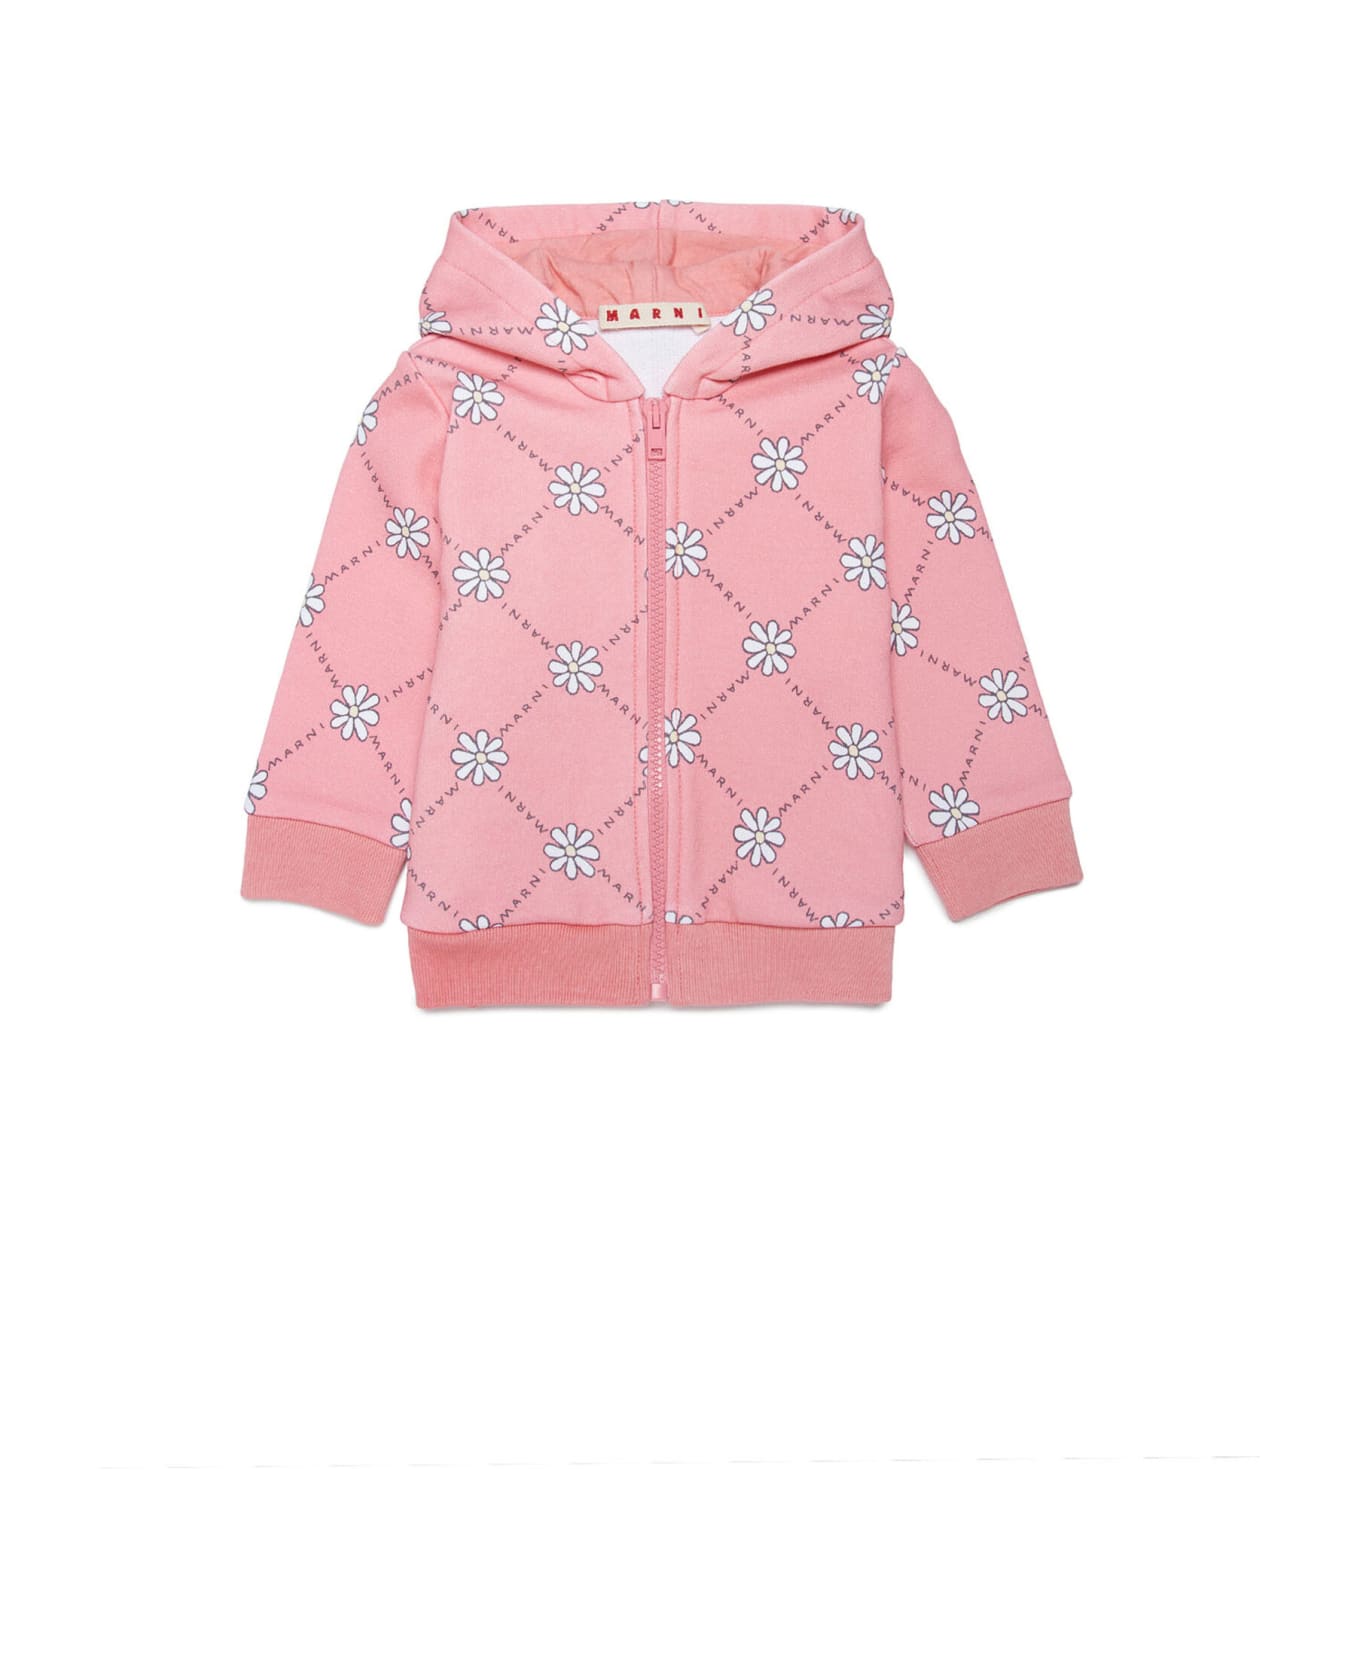 Marni Ms31b Sweat-shirt Marni Peach Pink Cotton Hooded Sweatshirt With Daisy Pattern - Peach blossom